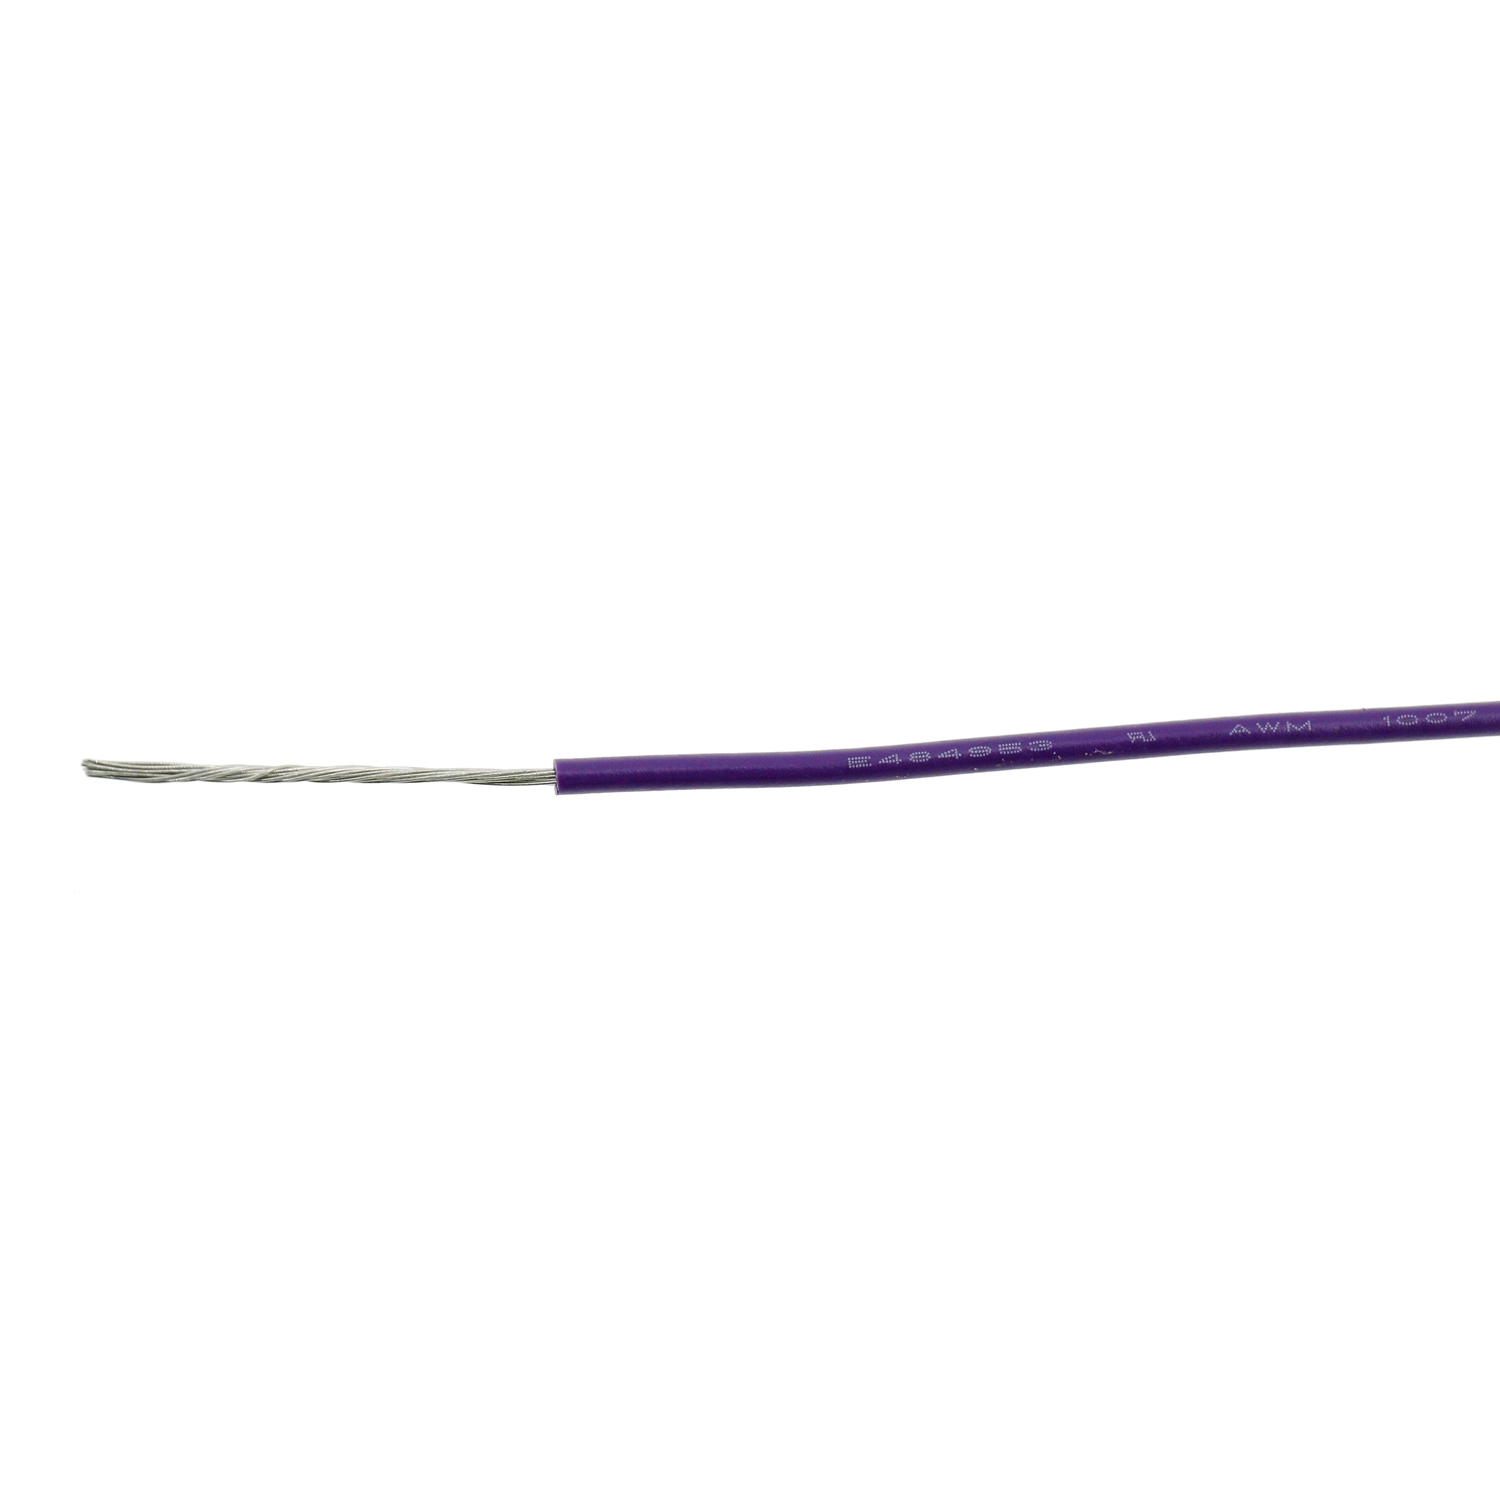 UL1007 PVC 300V Электрический соединительный провод для внутренней проводки